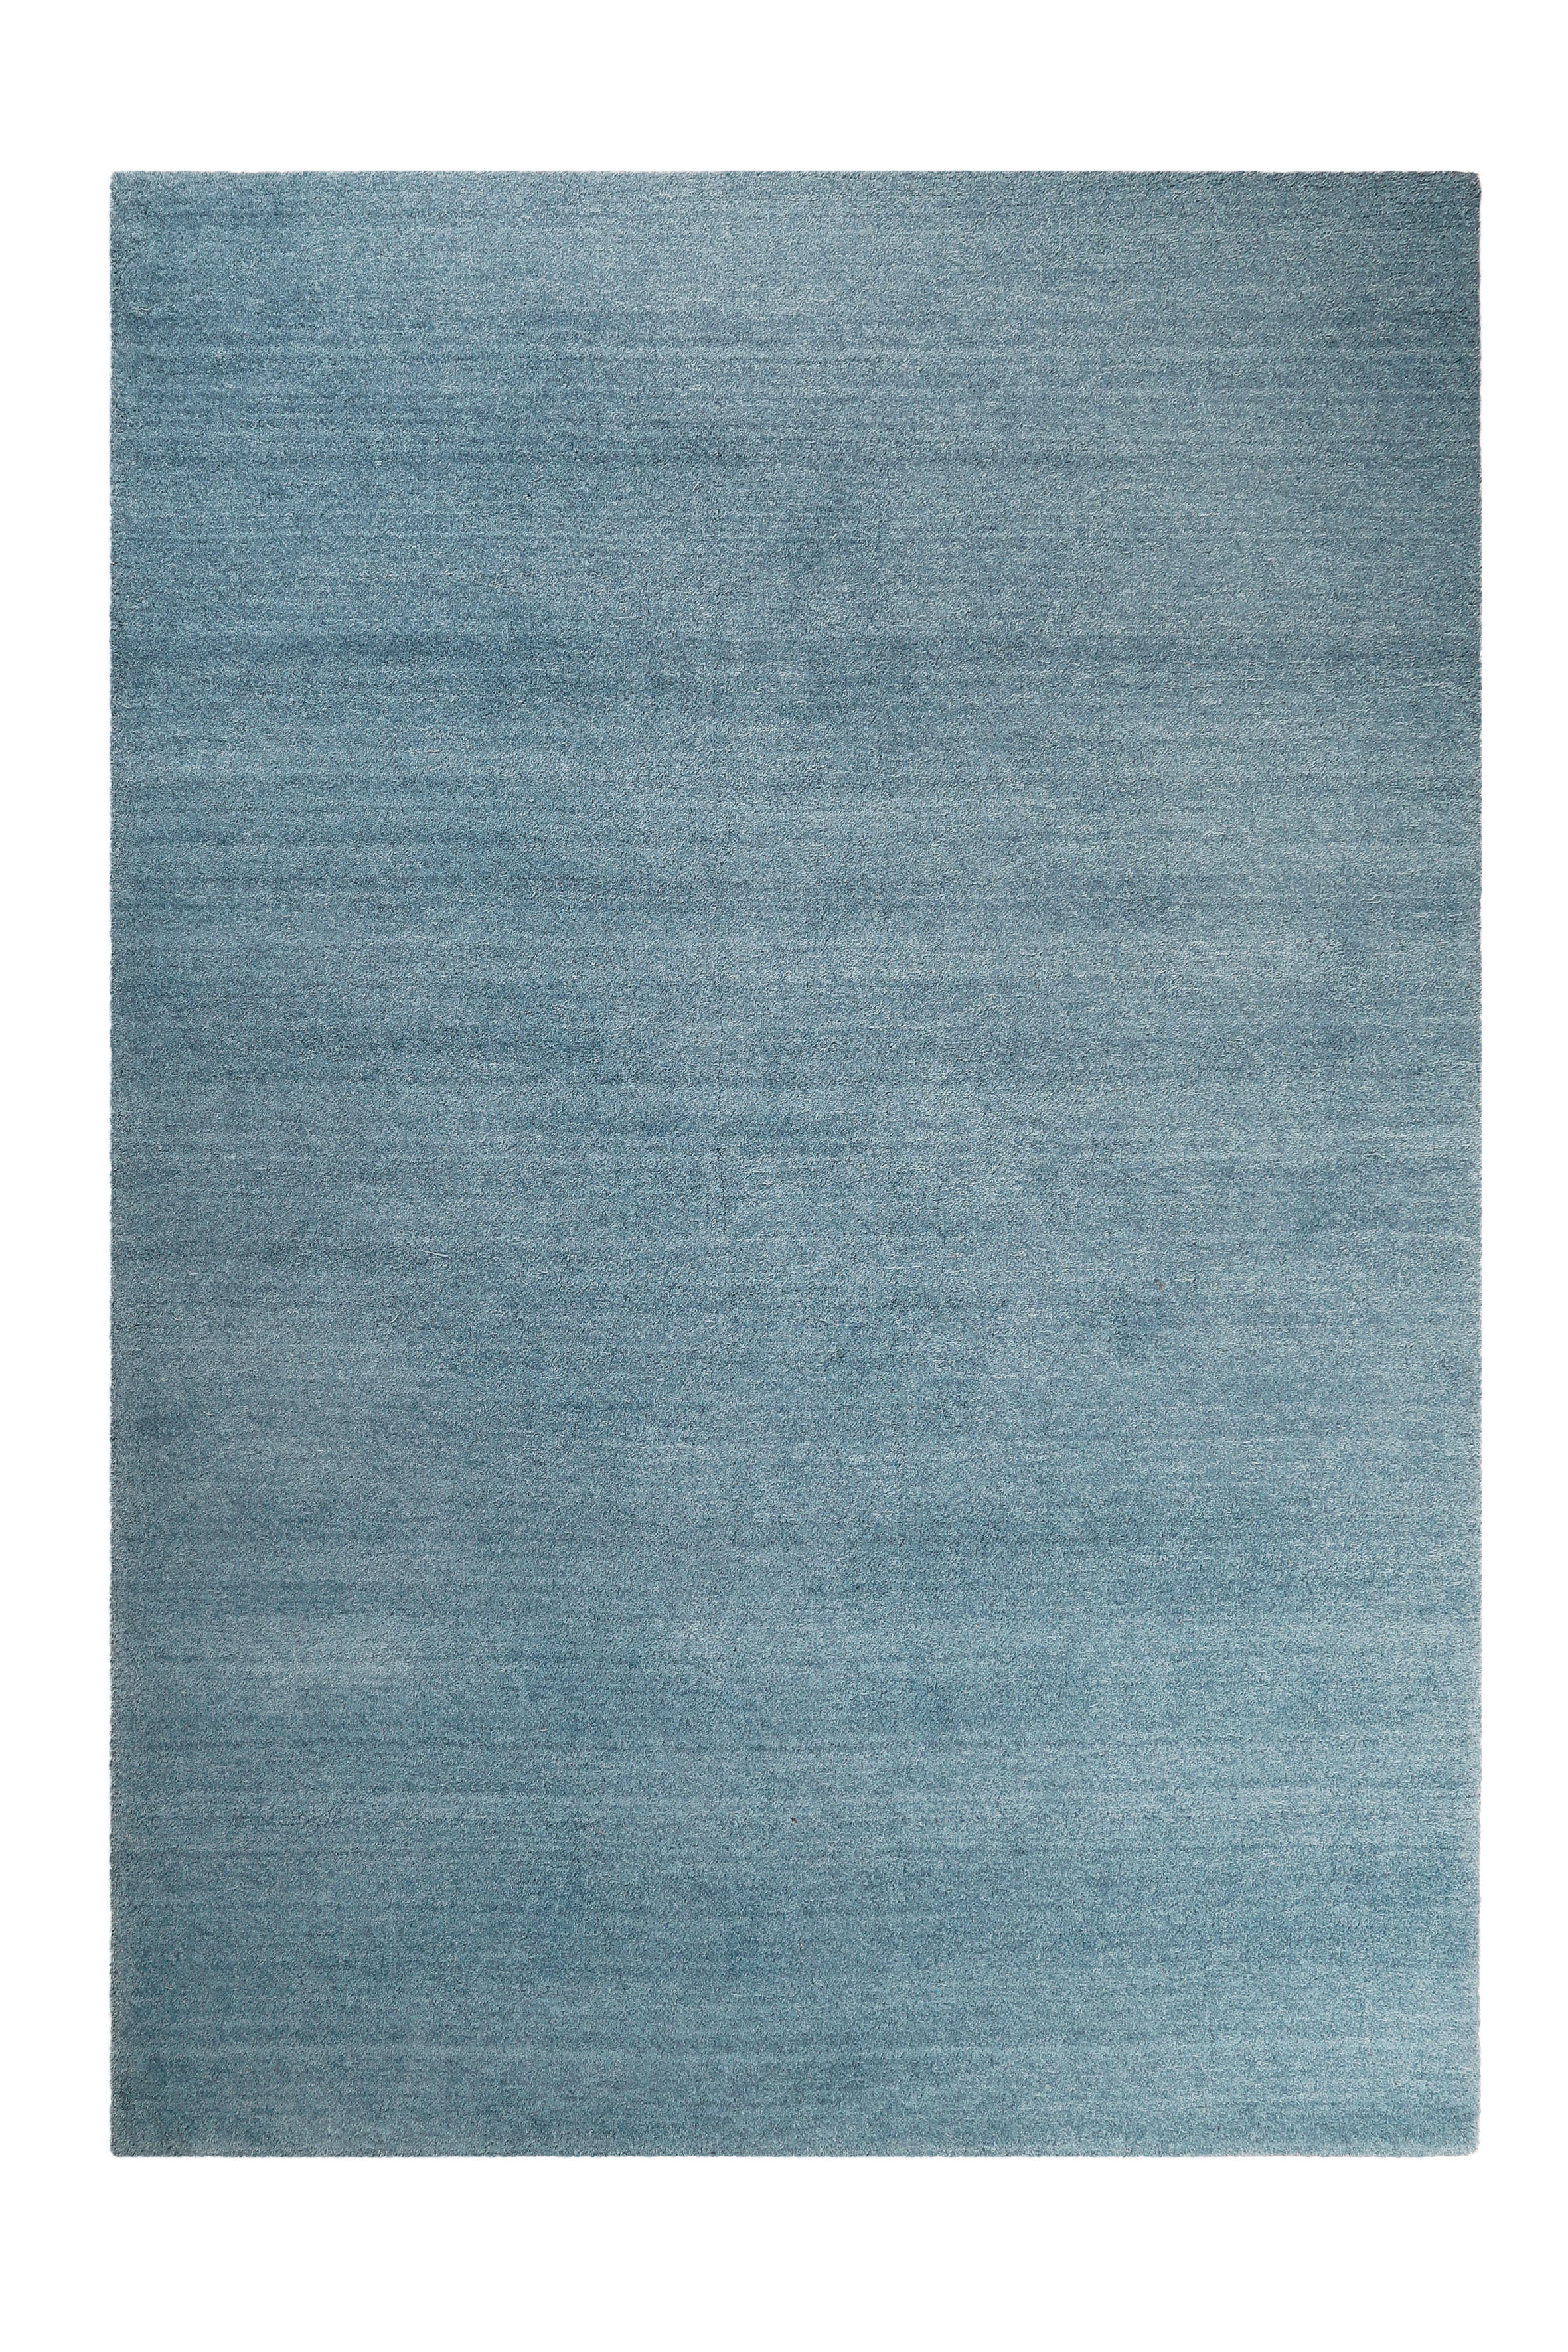 HOCHFLORTEPPICH  130/190 cm  getuftet  Blau   - Blau, Basics, Textil (130/190cm) - Esprit